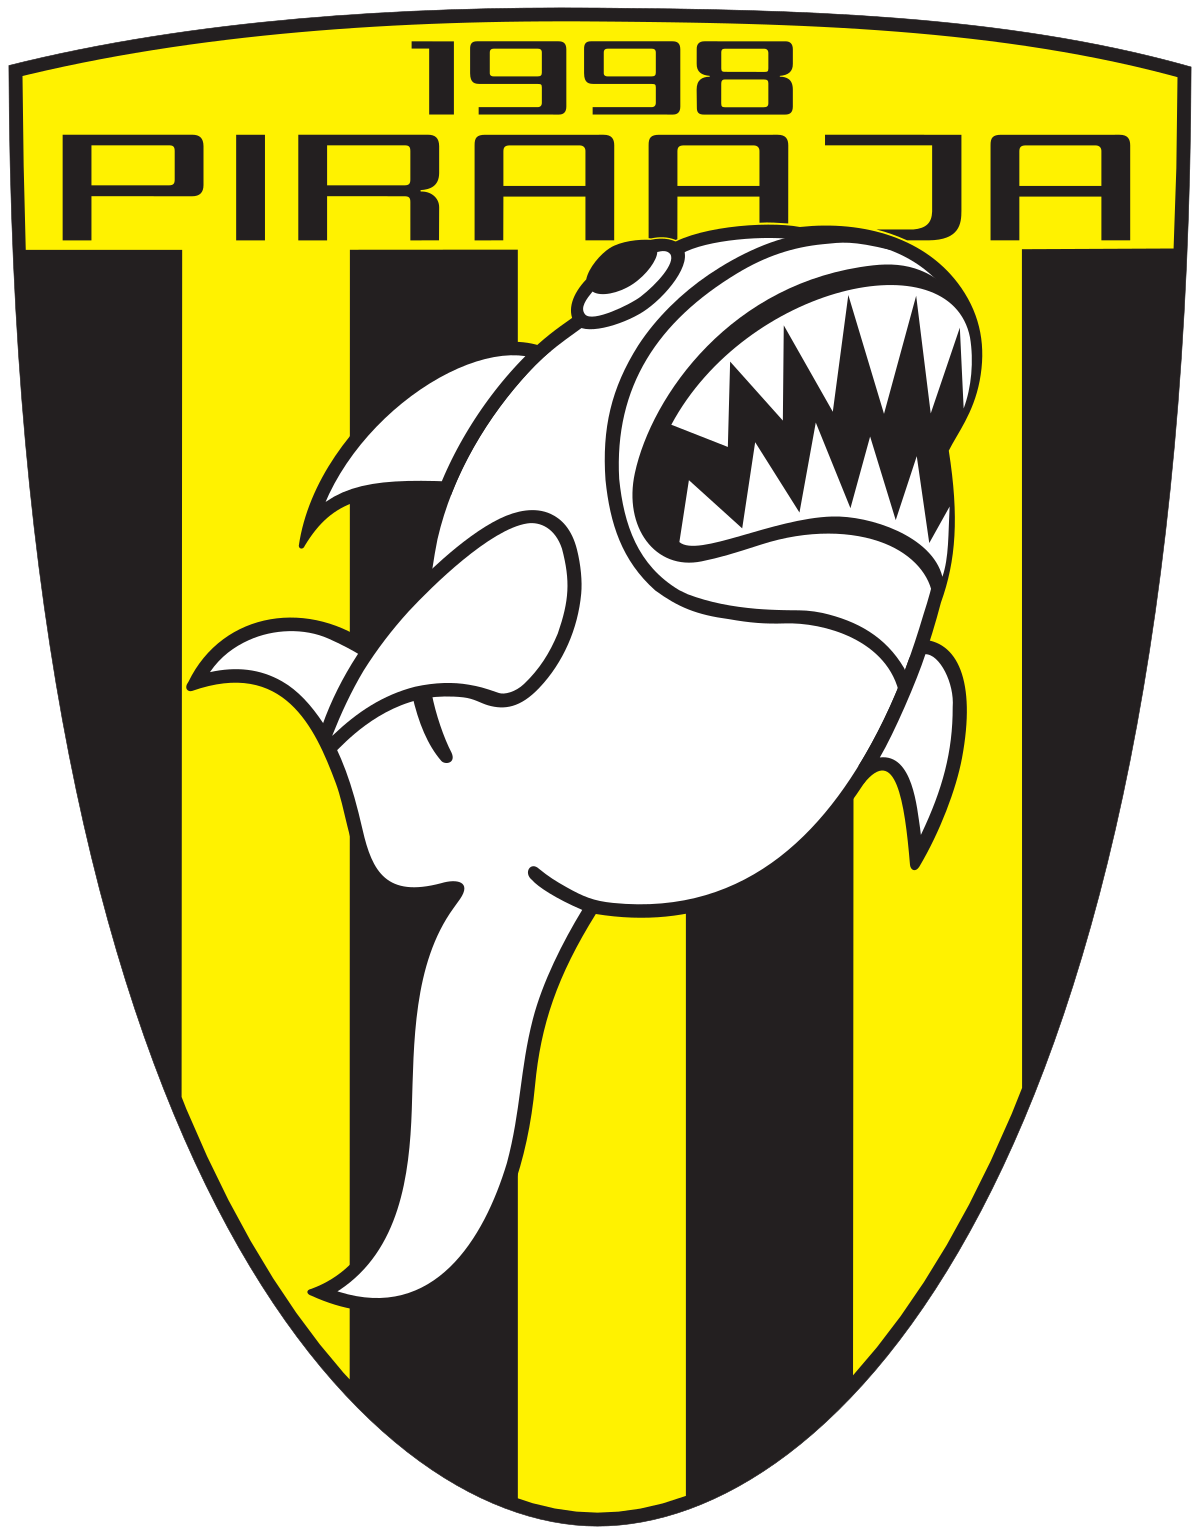 Tallinn Piraaja logo